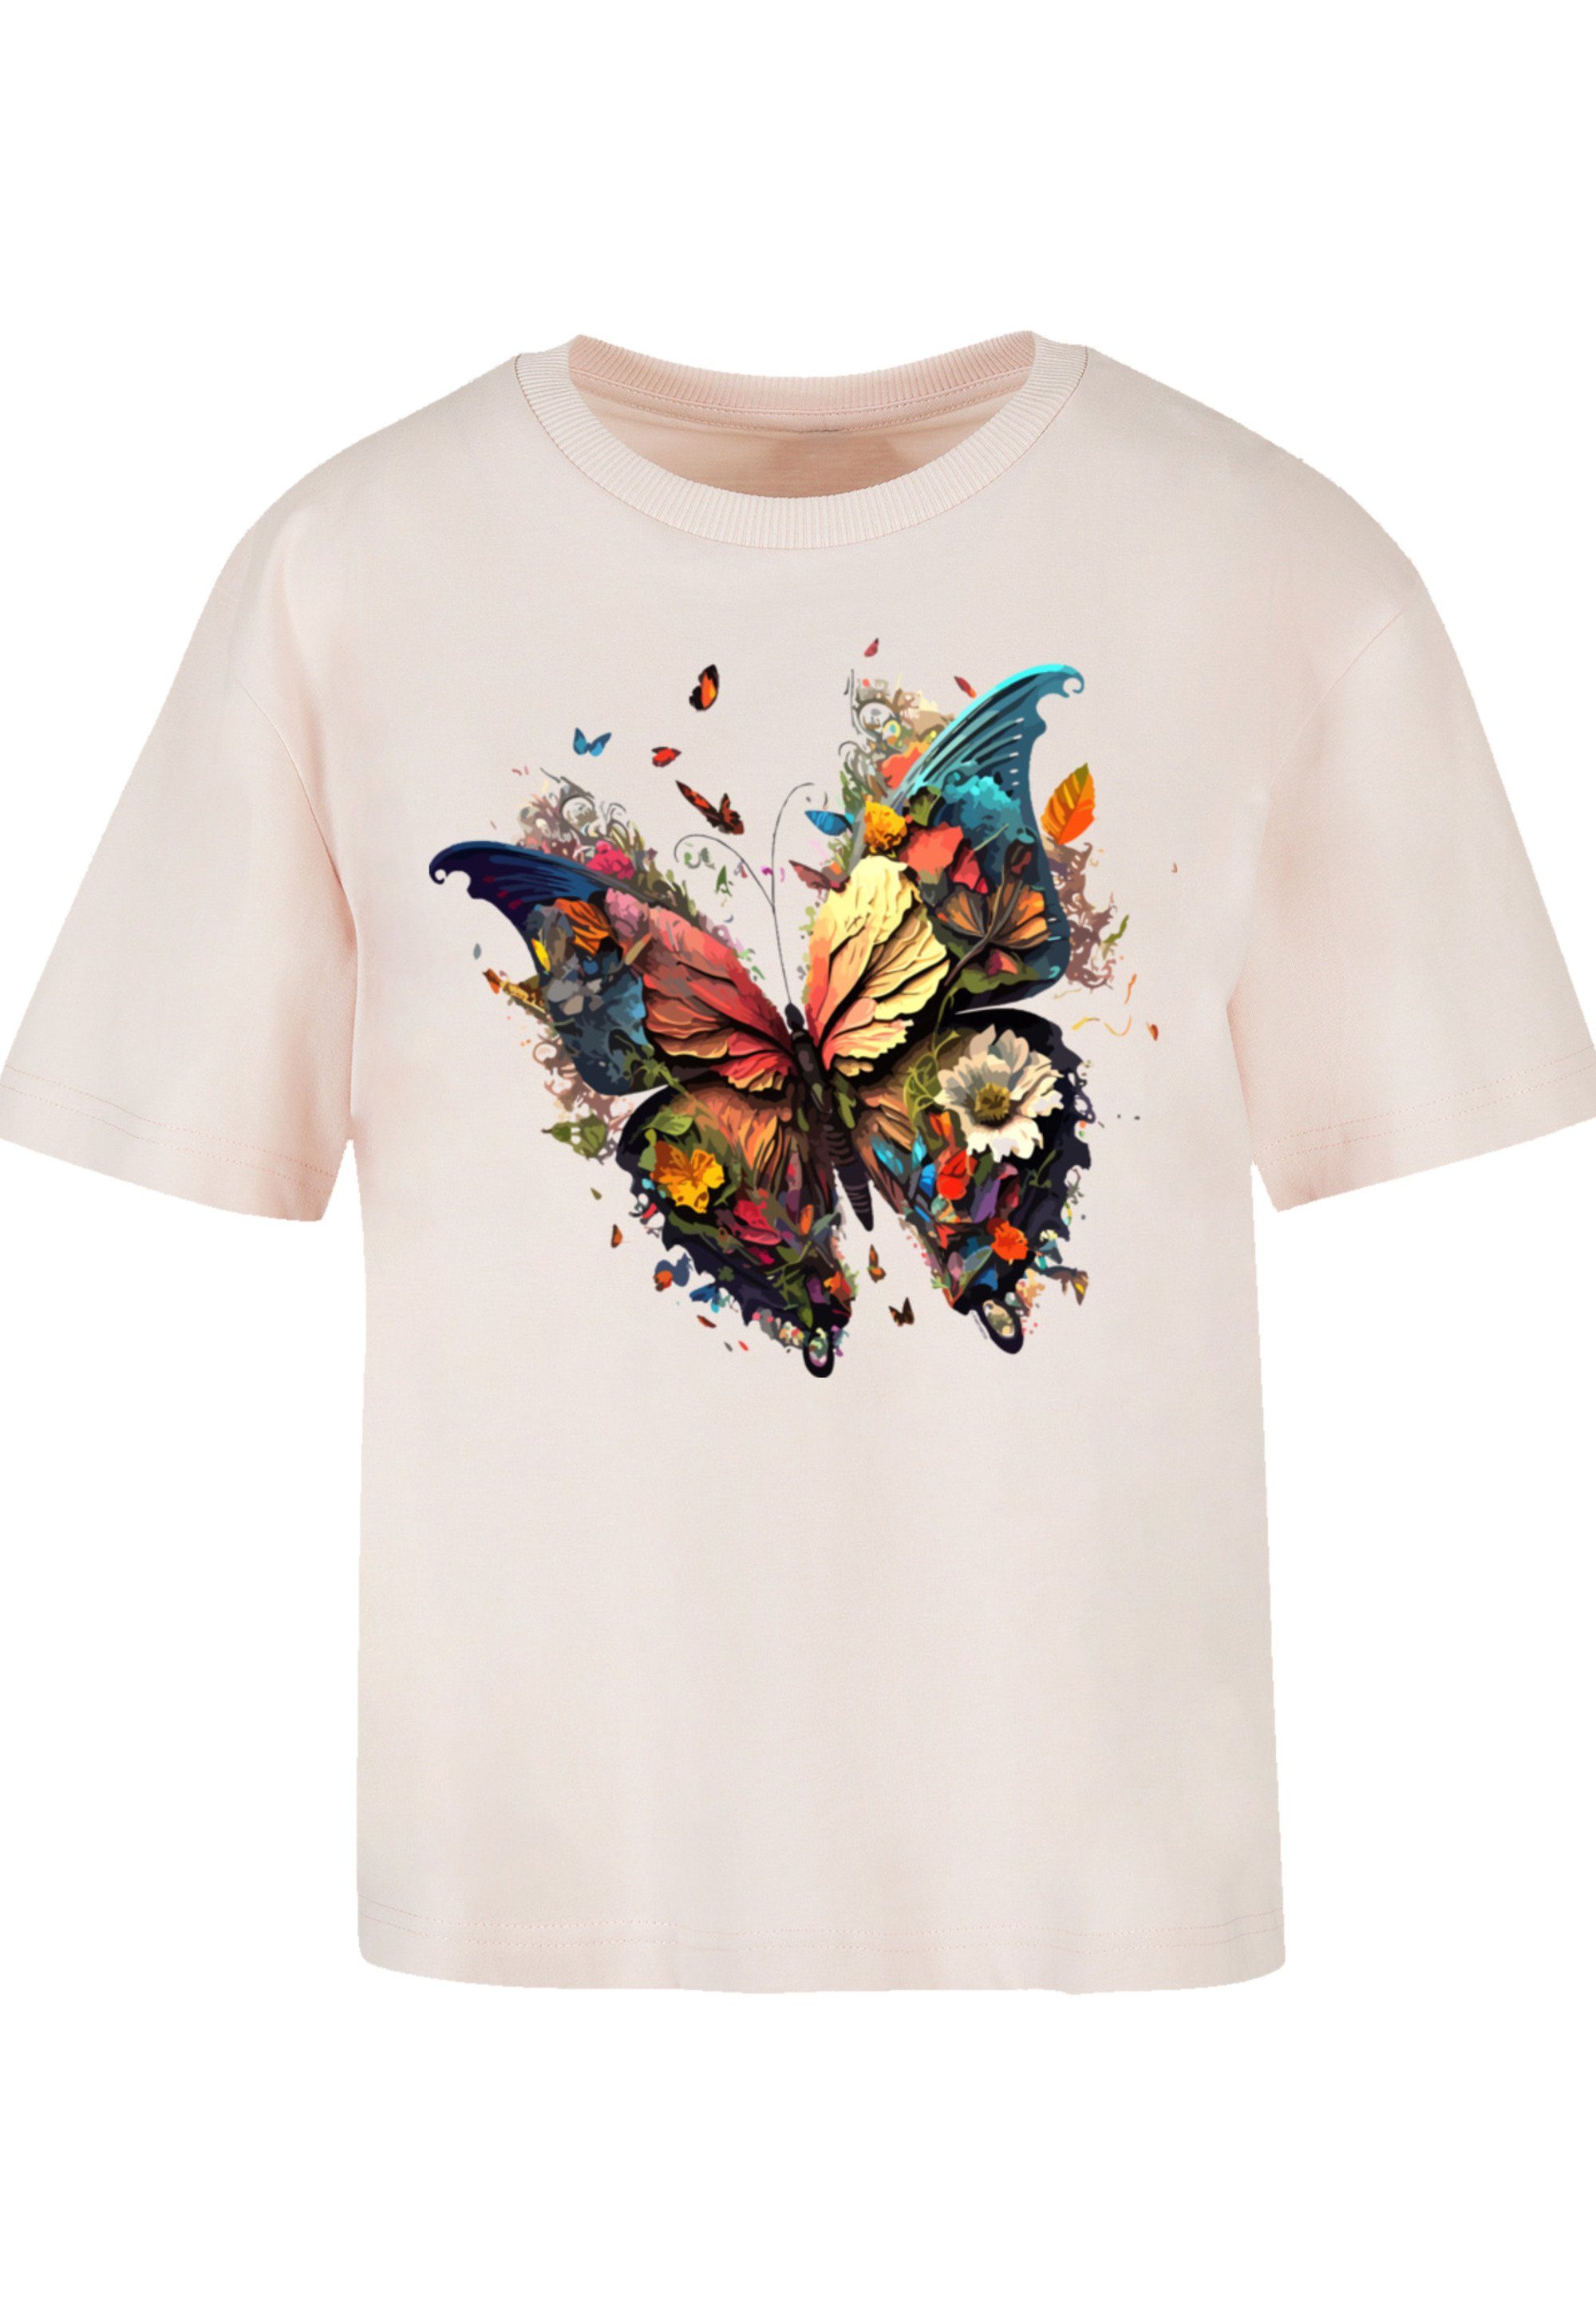 stylischen Look für T-Shirt Magic Gerippter Schmetterling F4NT4STIC Print, Rundhalsausschnitt